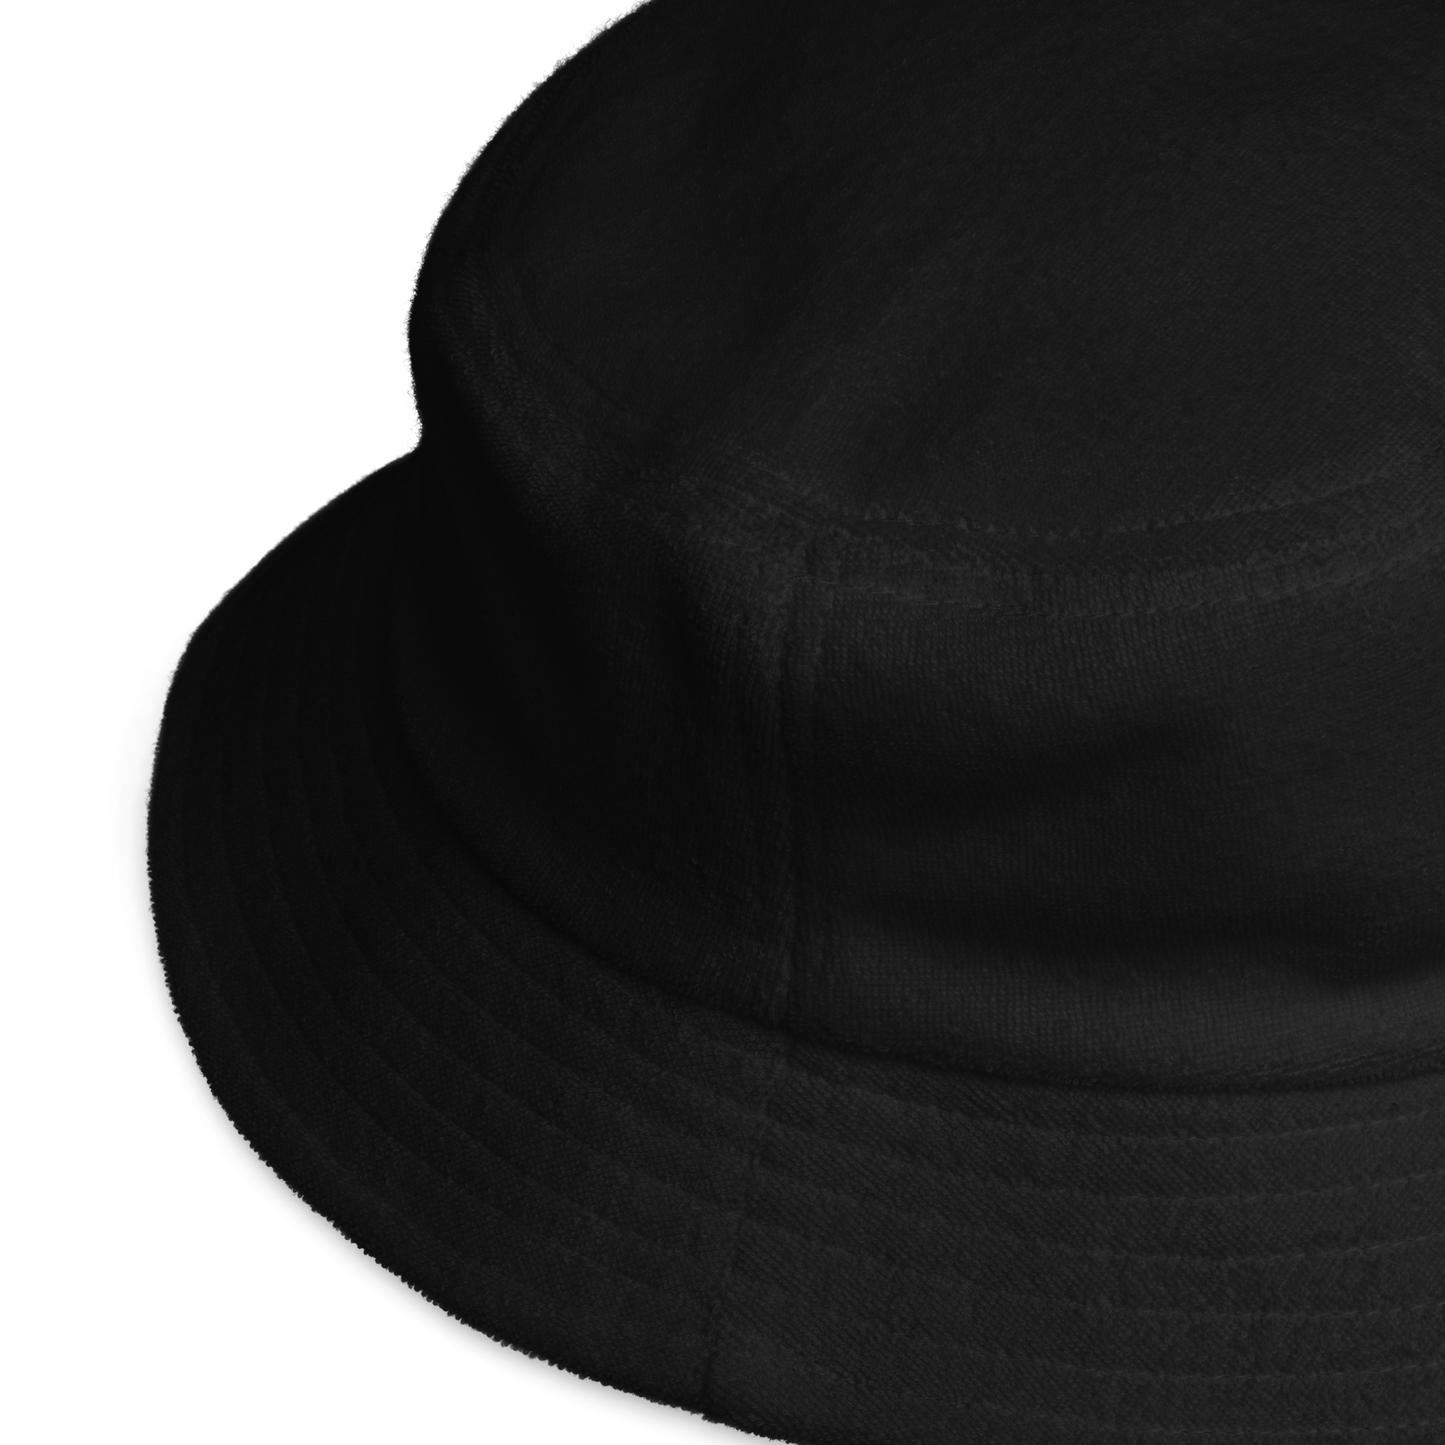 WAVY BUCKET HAT